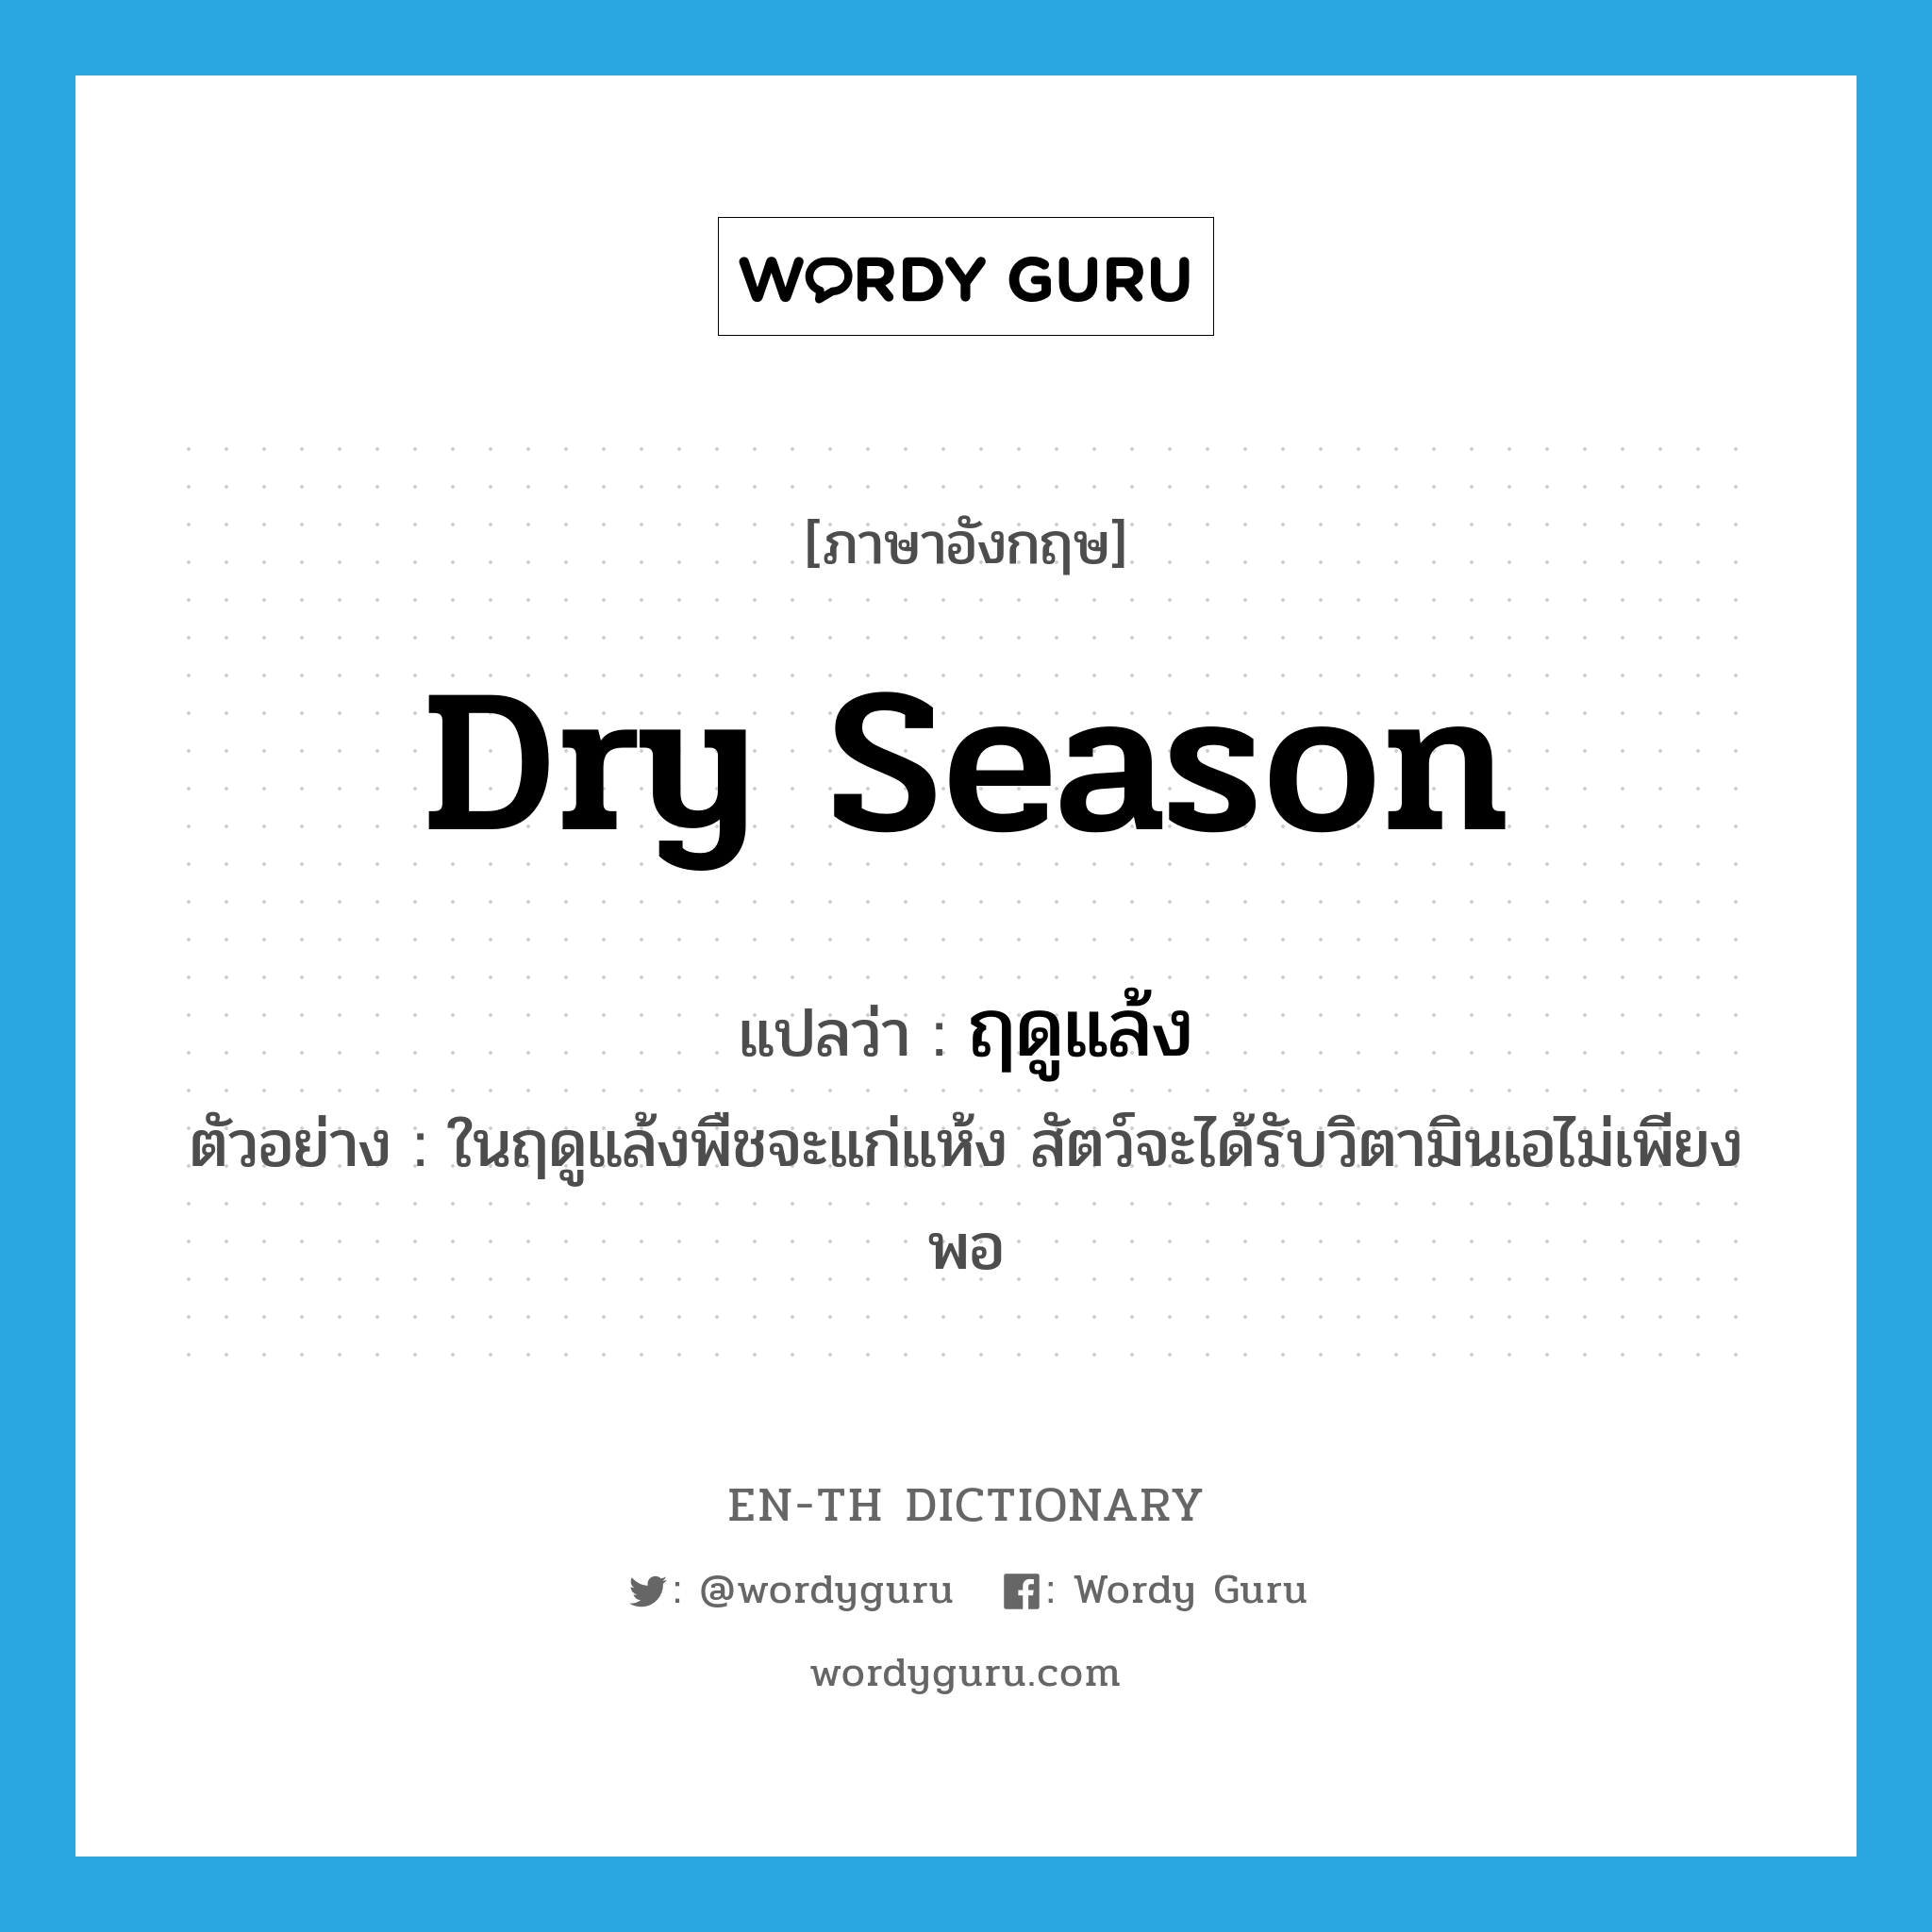 dry season แปลว่า?, คำศัพท์ภาษาอังกฤษ dry season แปลว่า ฤดูแล้ง ประเภท N ตัวอย่าง ในฤดูแล้งพืชจะแก่แห้ง สัตว์จะได้รับวิตามินเอไม่เพียงพอ หมวด N